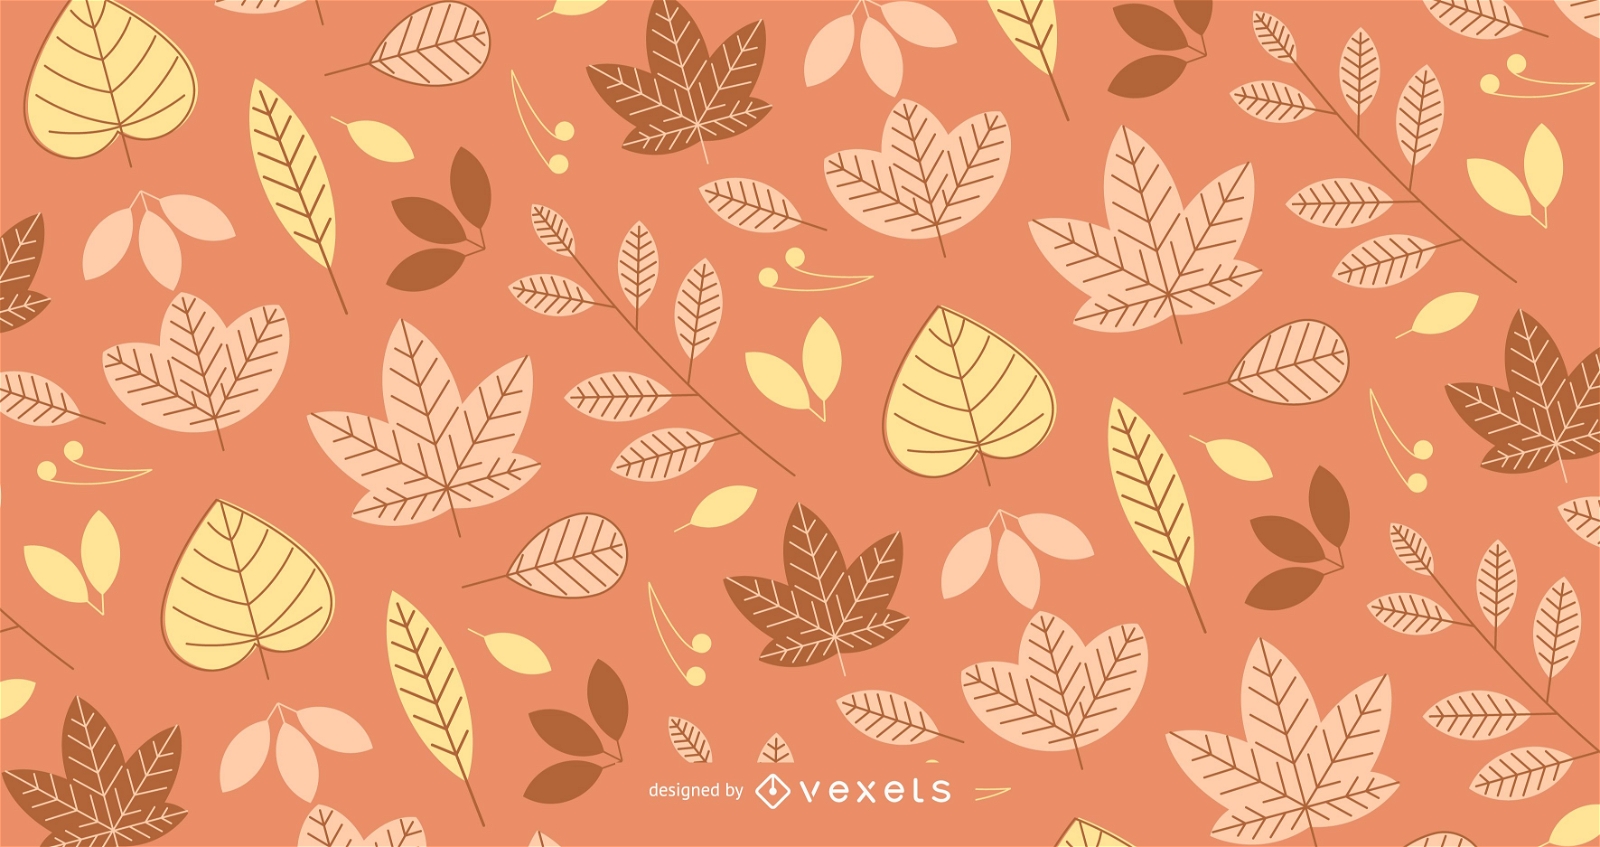 Padrão de outono com folhas ilustradas